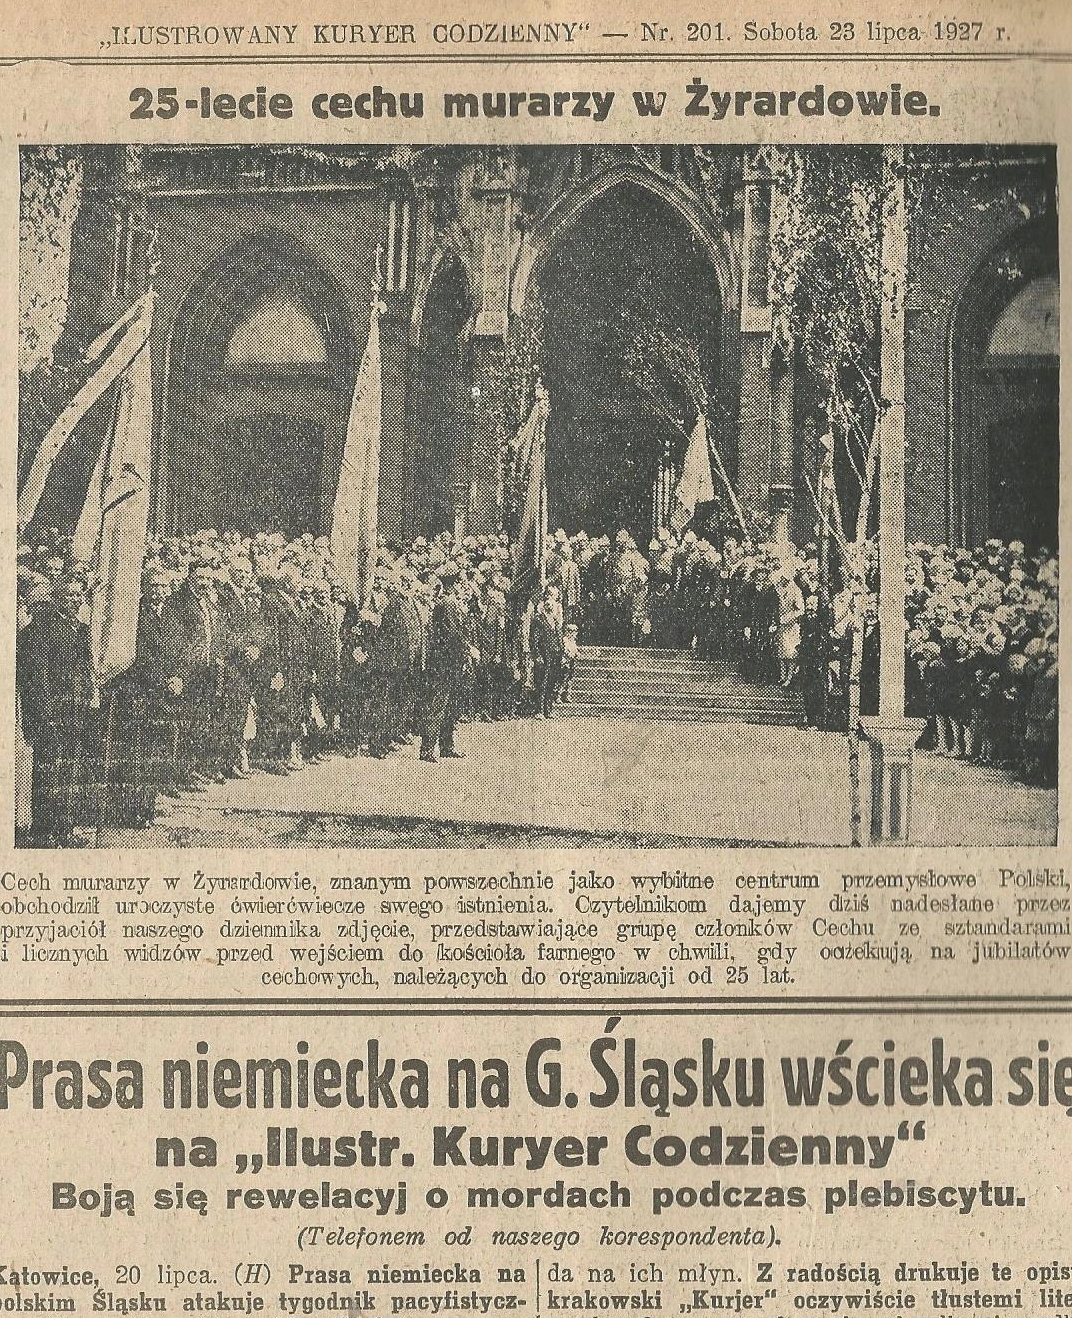 Cech murarzy w Żyrardowie 1927 rok.jpg